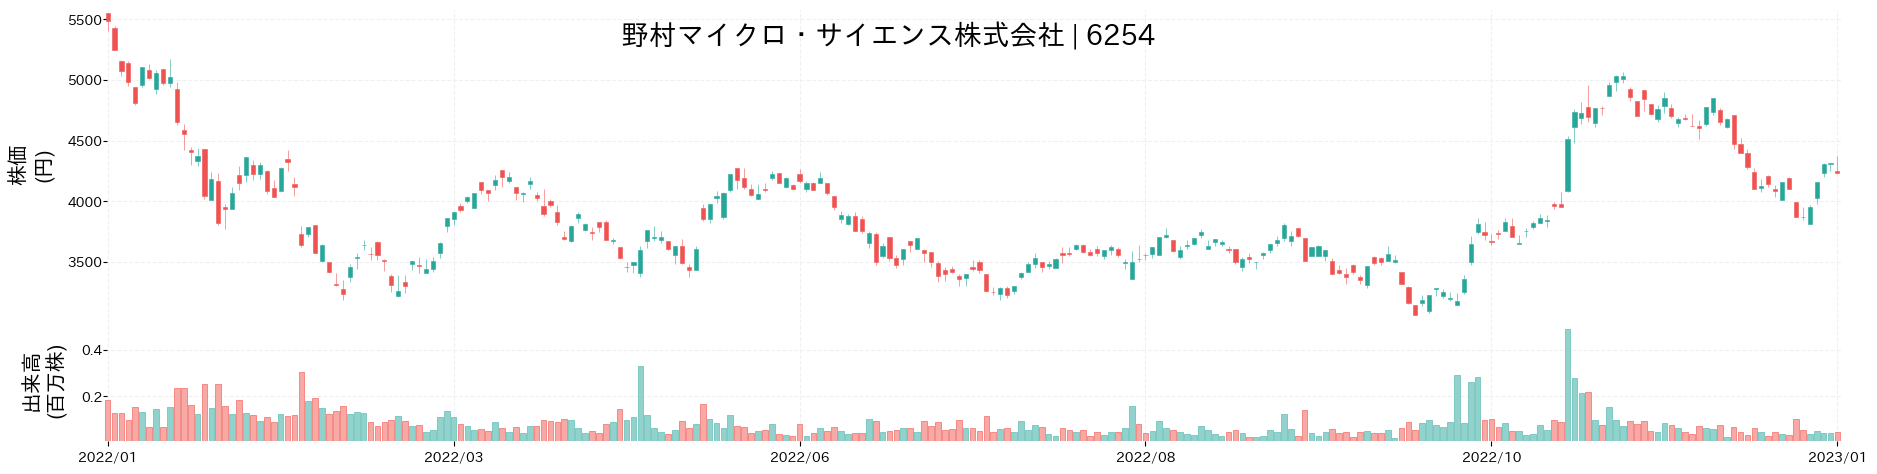 野村マイクロ・サイエンスの株価推移(2022)